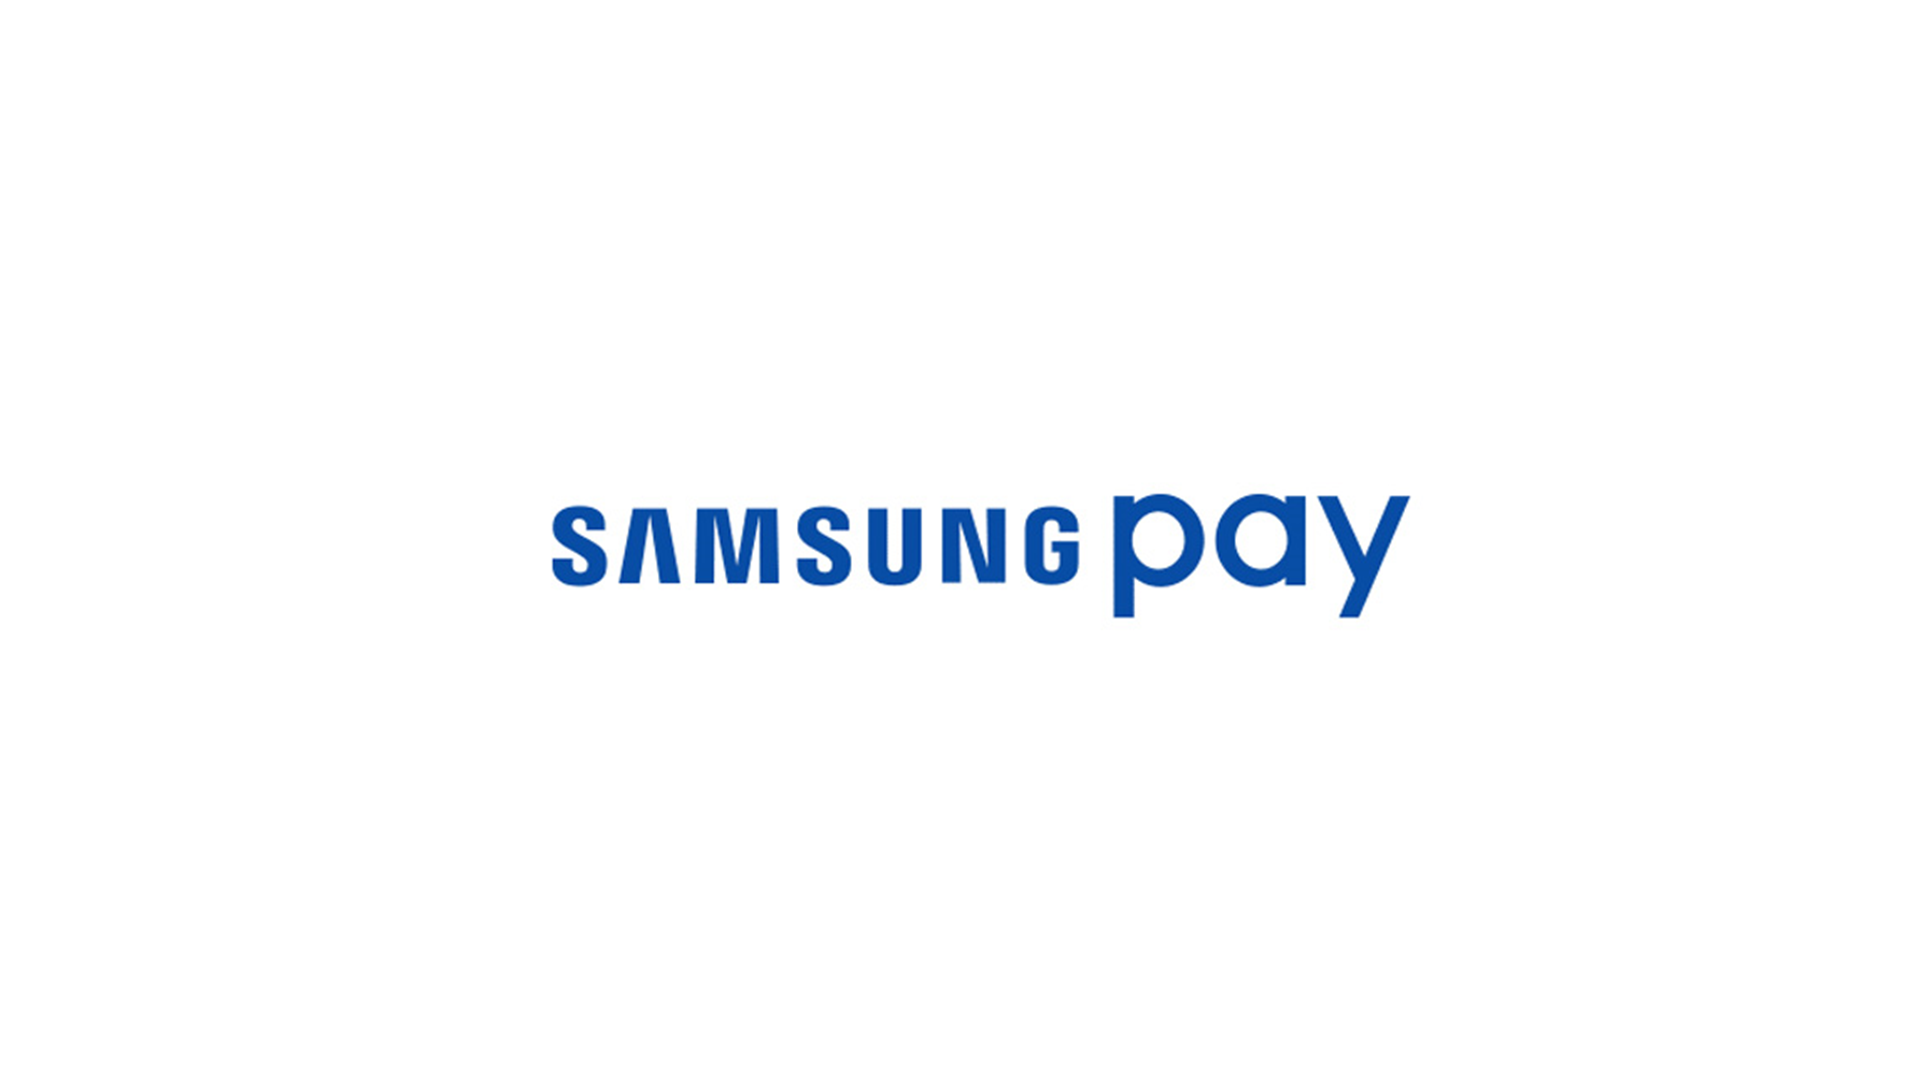 Samsung Pay partage vos données avec ses partenaires, mais vous pouvez maintenant vous y opposer